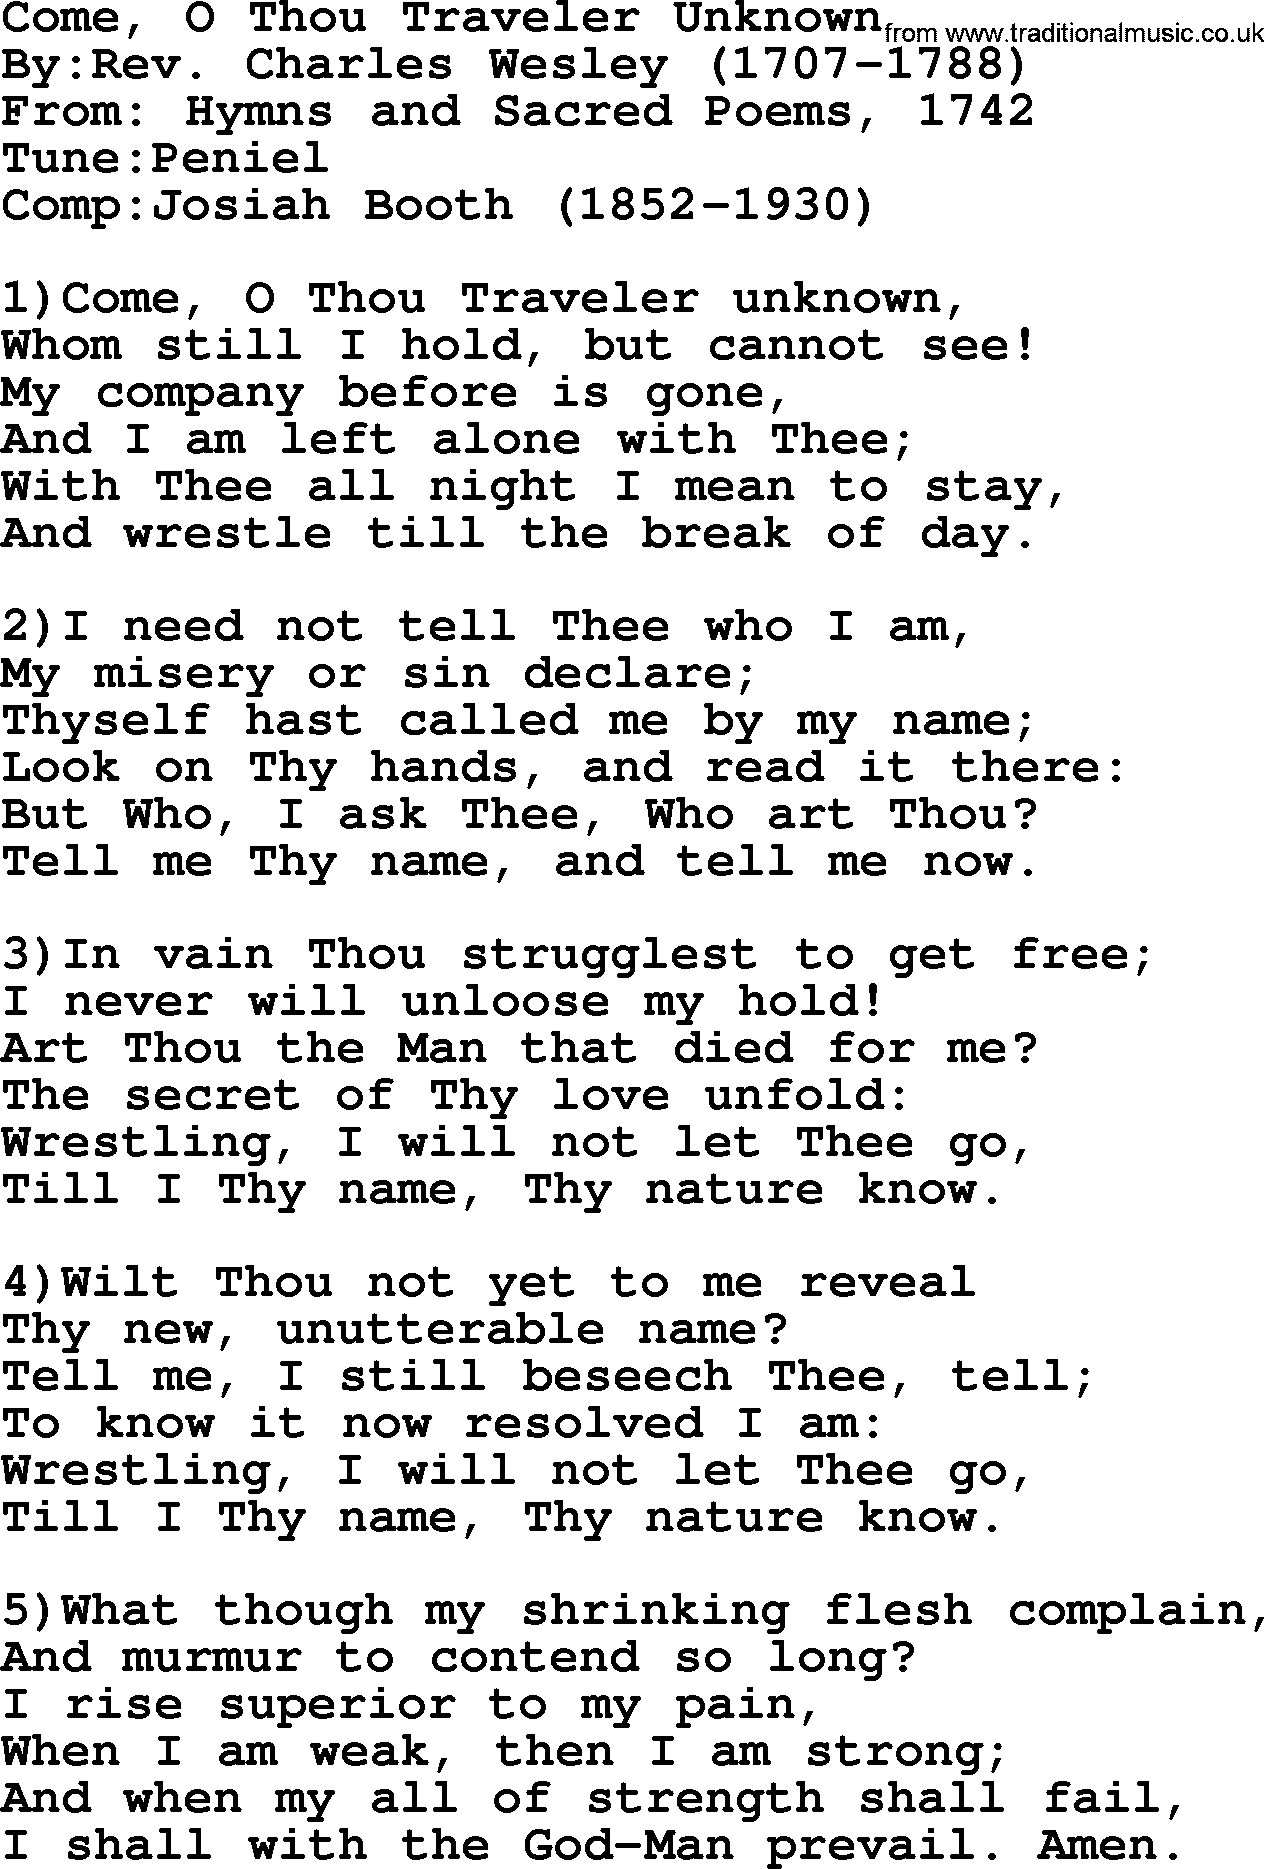 Methodist Hymn: Come, O Thou Traveler Unknown, lyrics